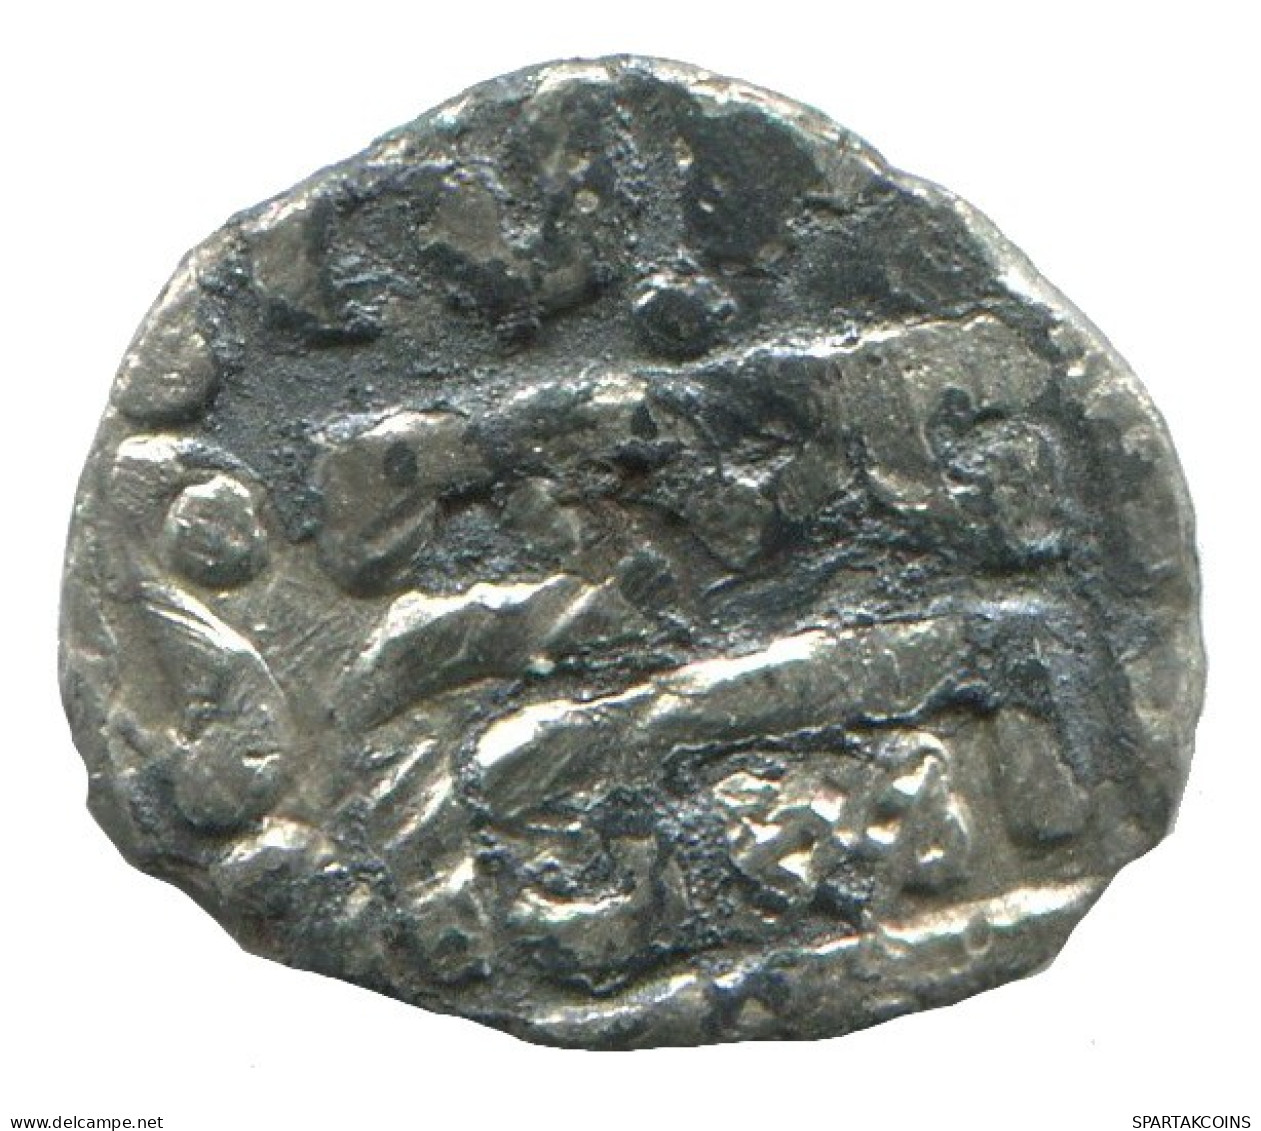 GOLDEN HORDE Silver Dirham Medieval Islamic Coin 0.5g/12mm #NNN2035.8.D.A - Islamische Münzen